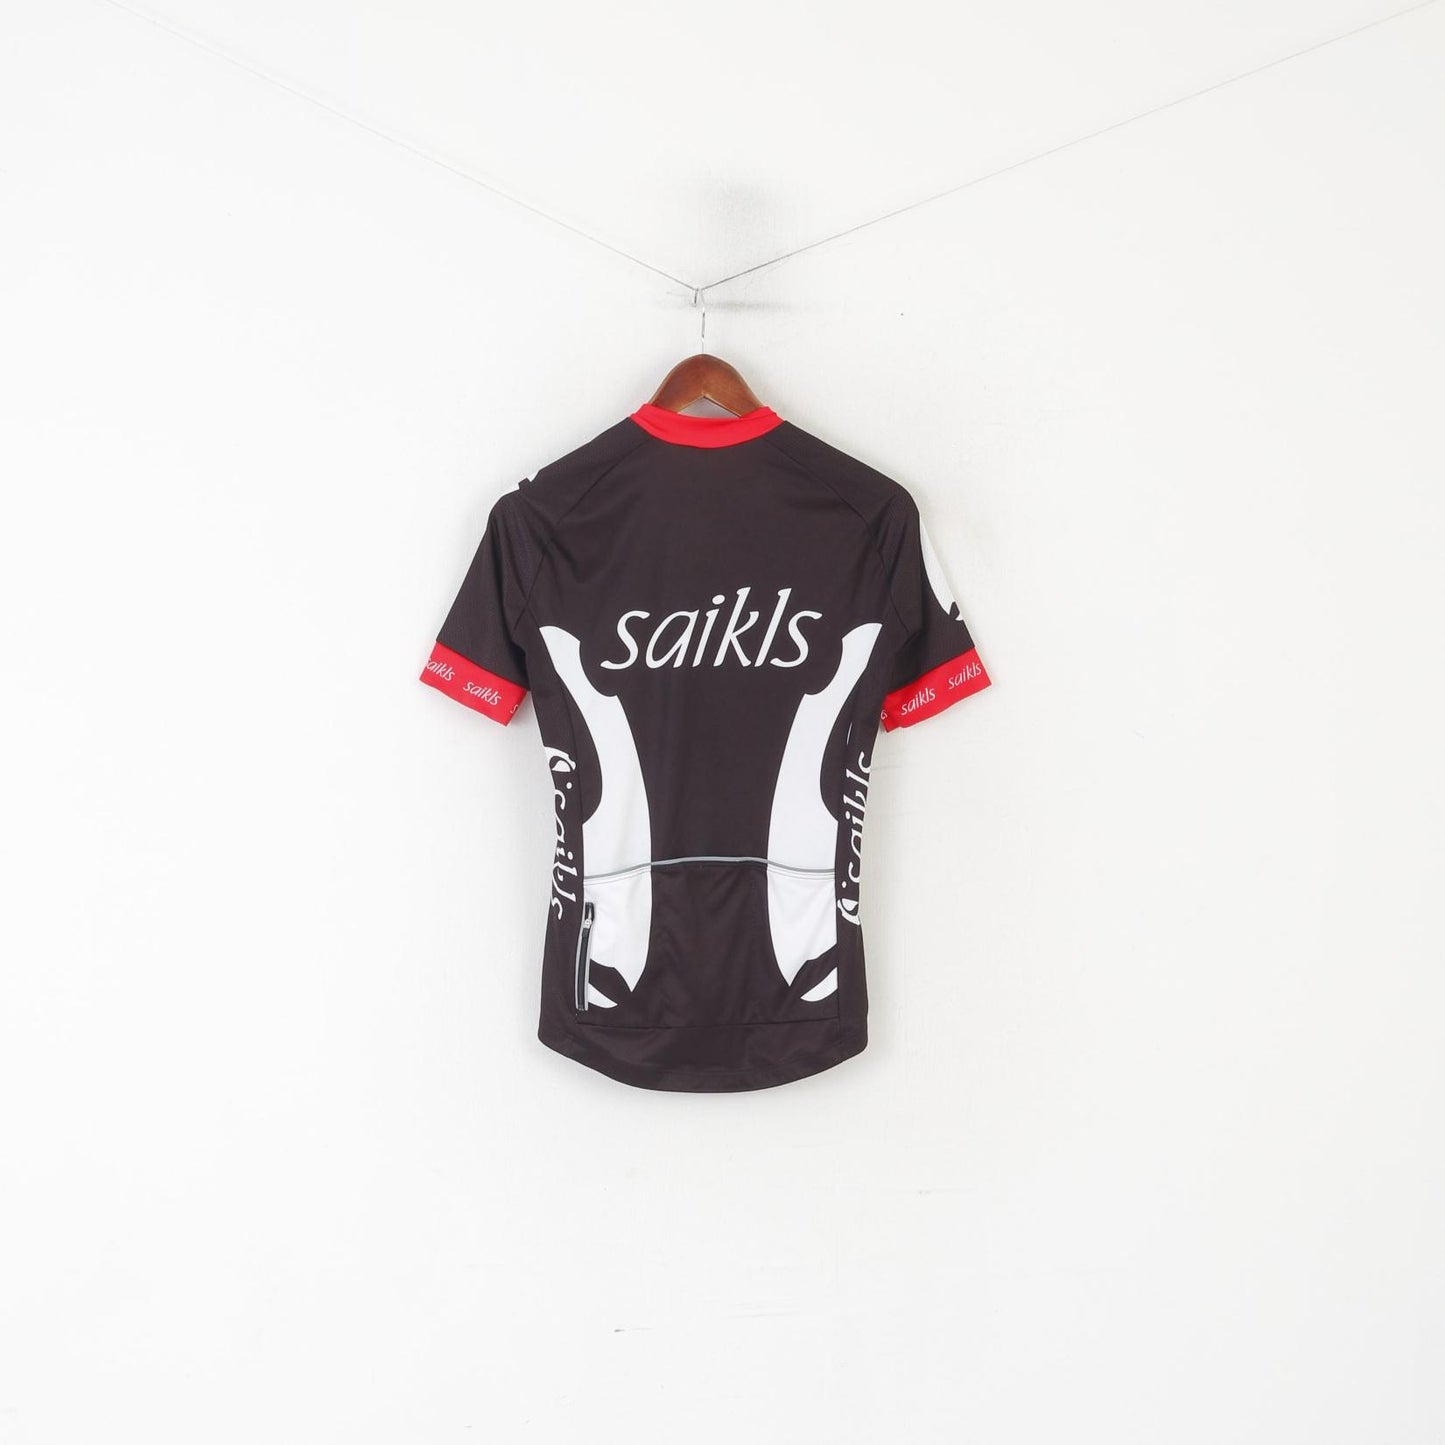 Saikls hommes M chemise de cyclisme noir fermeture éclair complète vêtements de sport vêtements de vélo Mazda haut en jersey